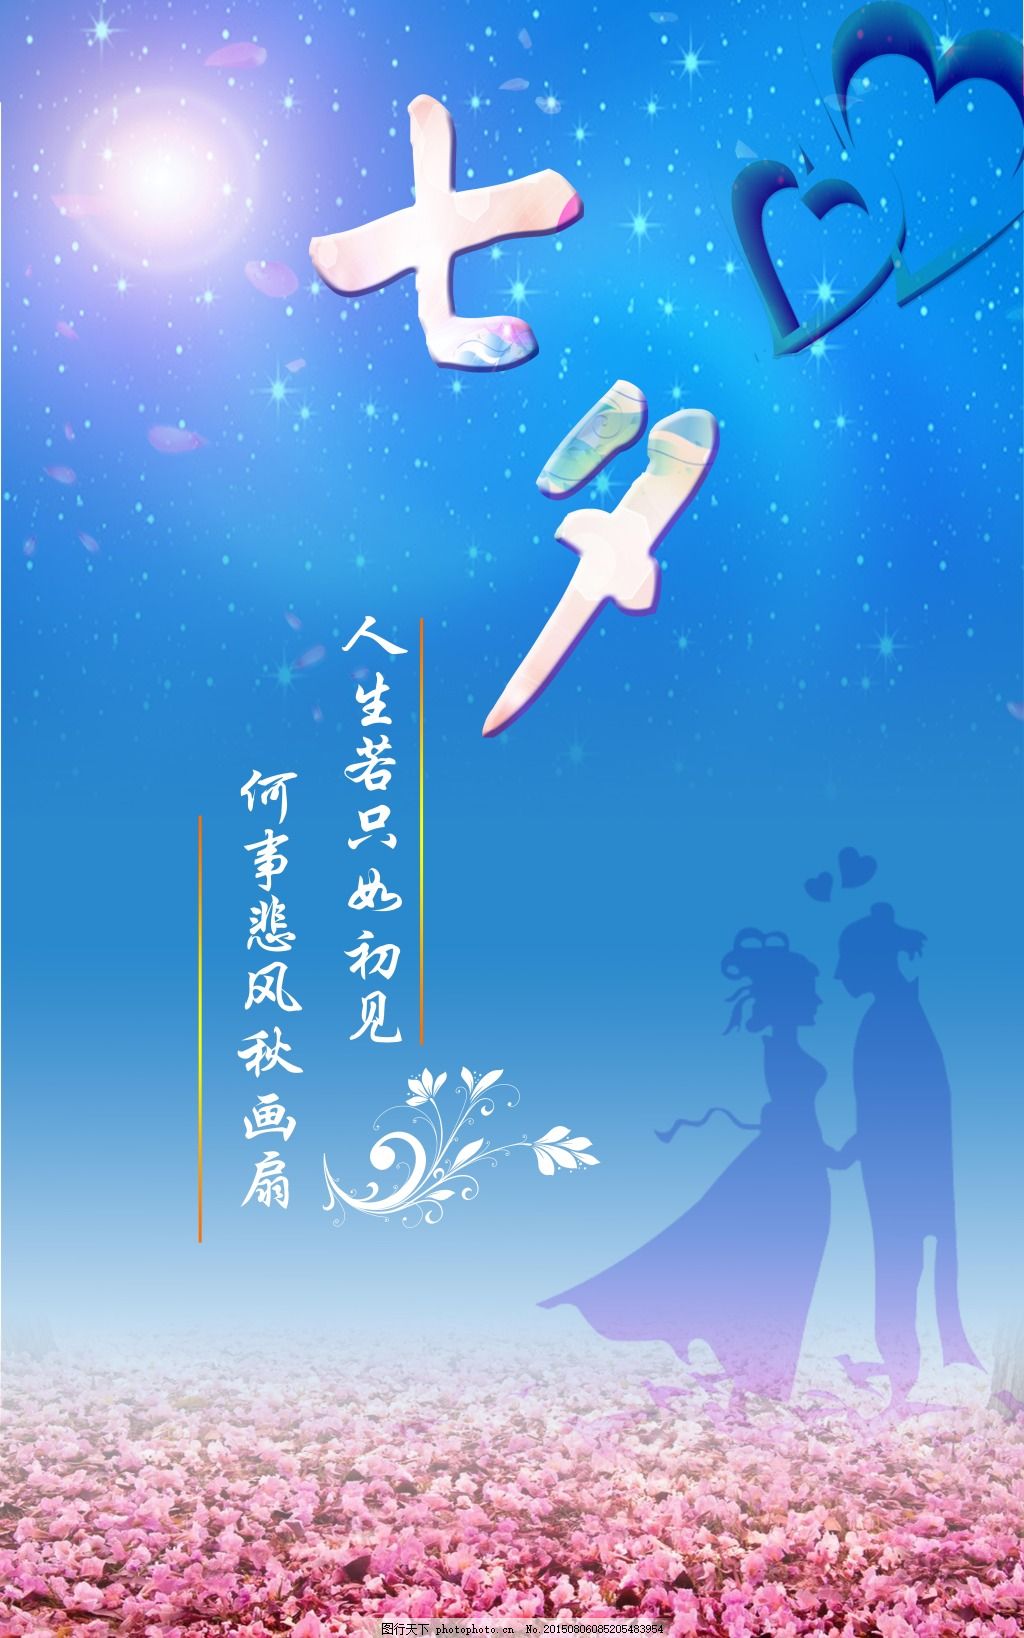 七夕海报字体设计PSD素材 - 爱图网